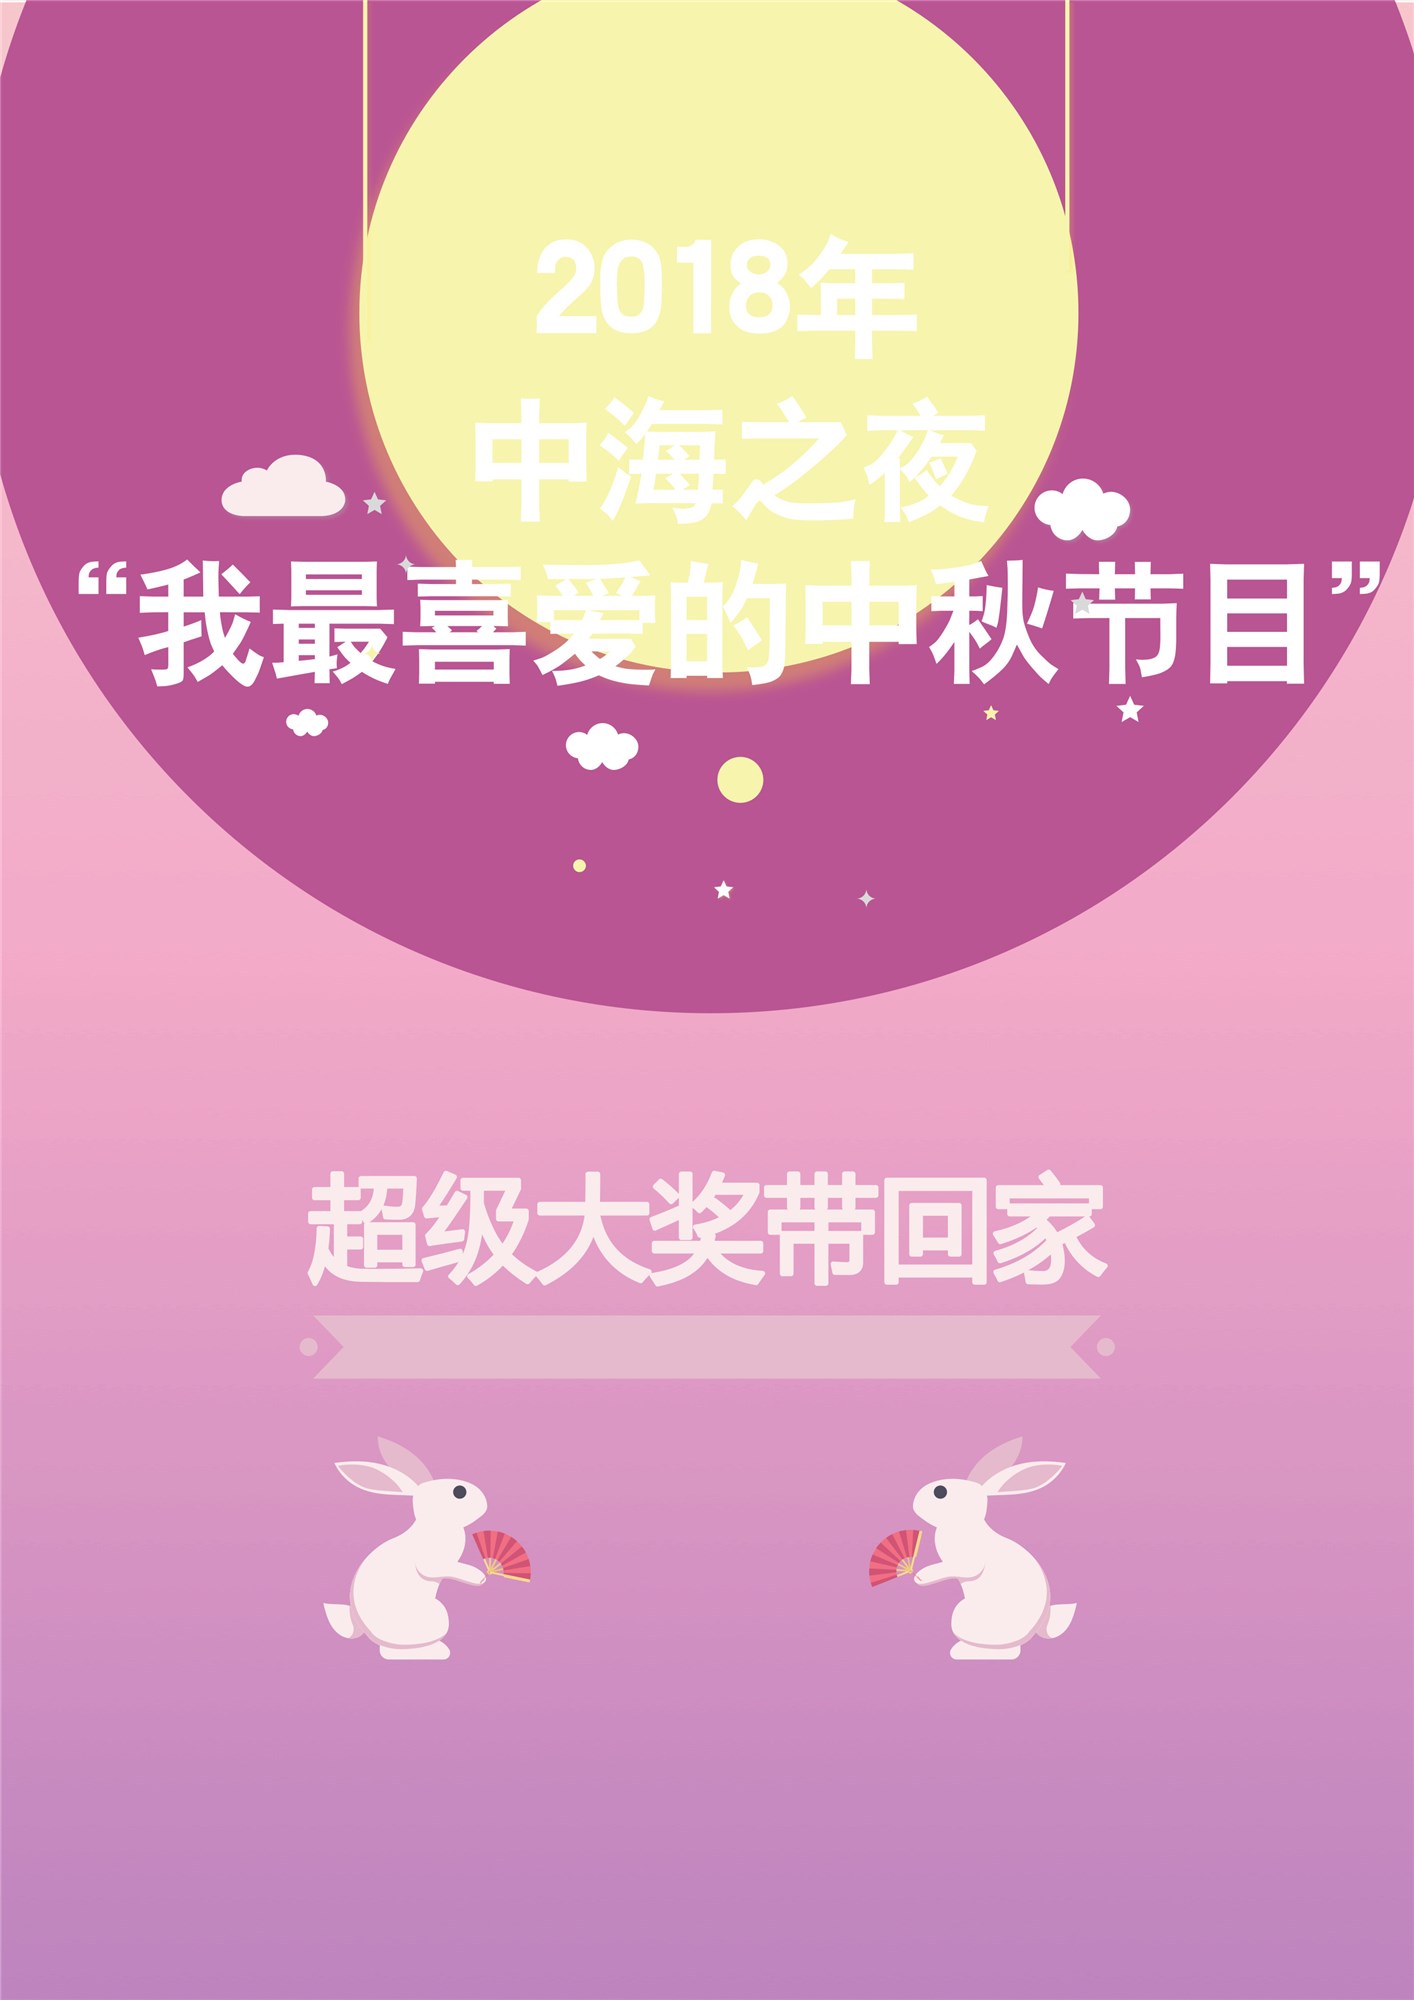 中海之夜“我最喜爱的中秋节目”，免费微信投票第三方平台，选吧系统，公众号，网络，网上投票制作